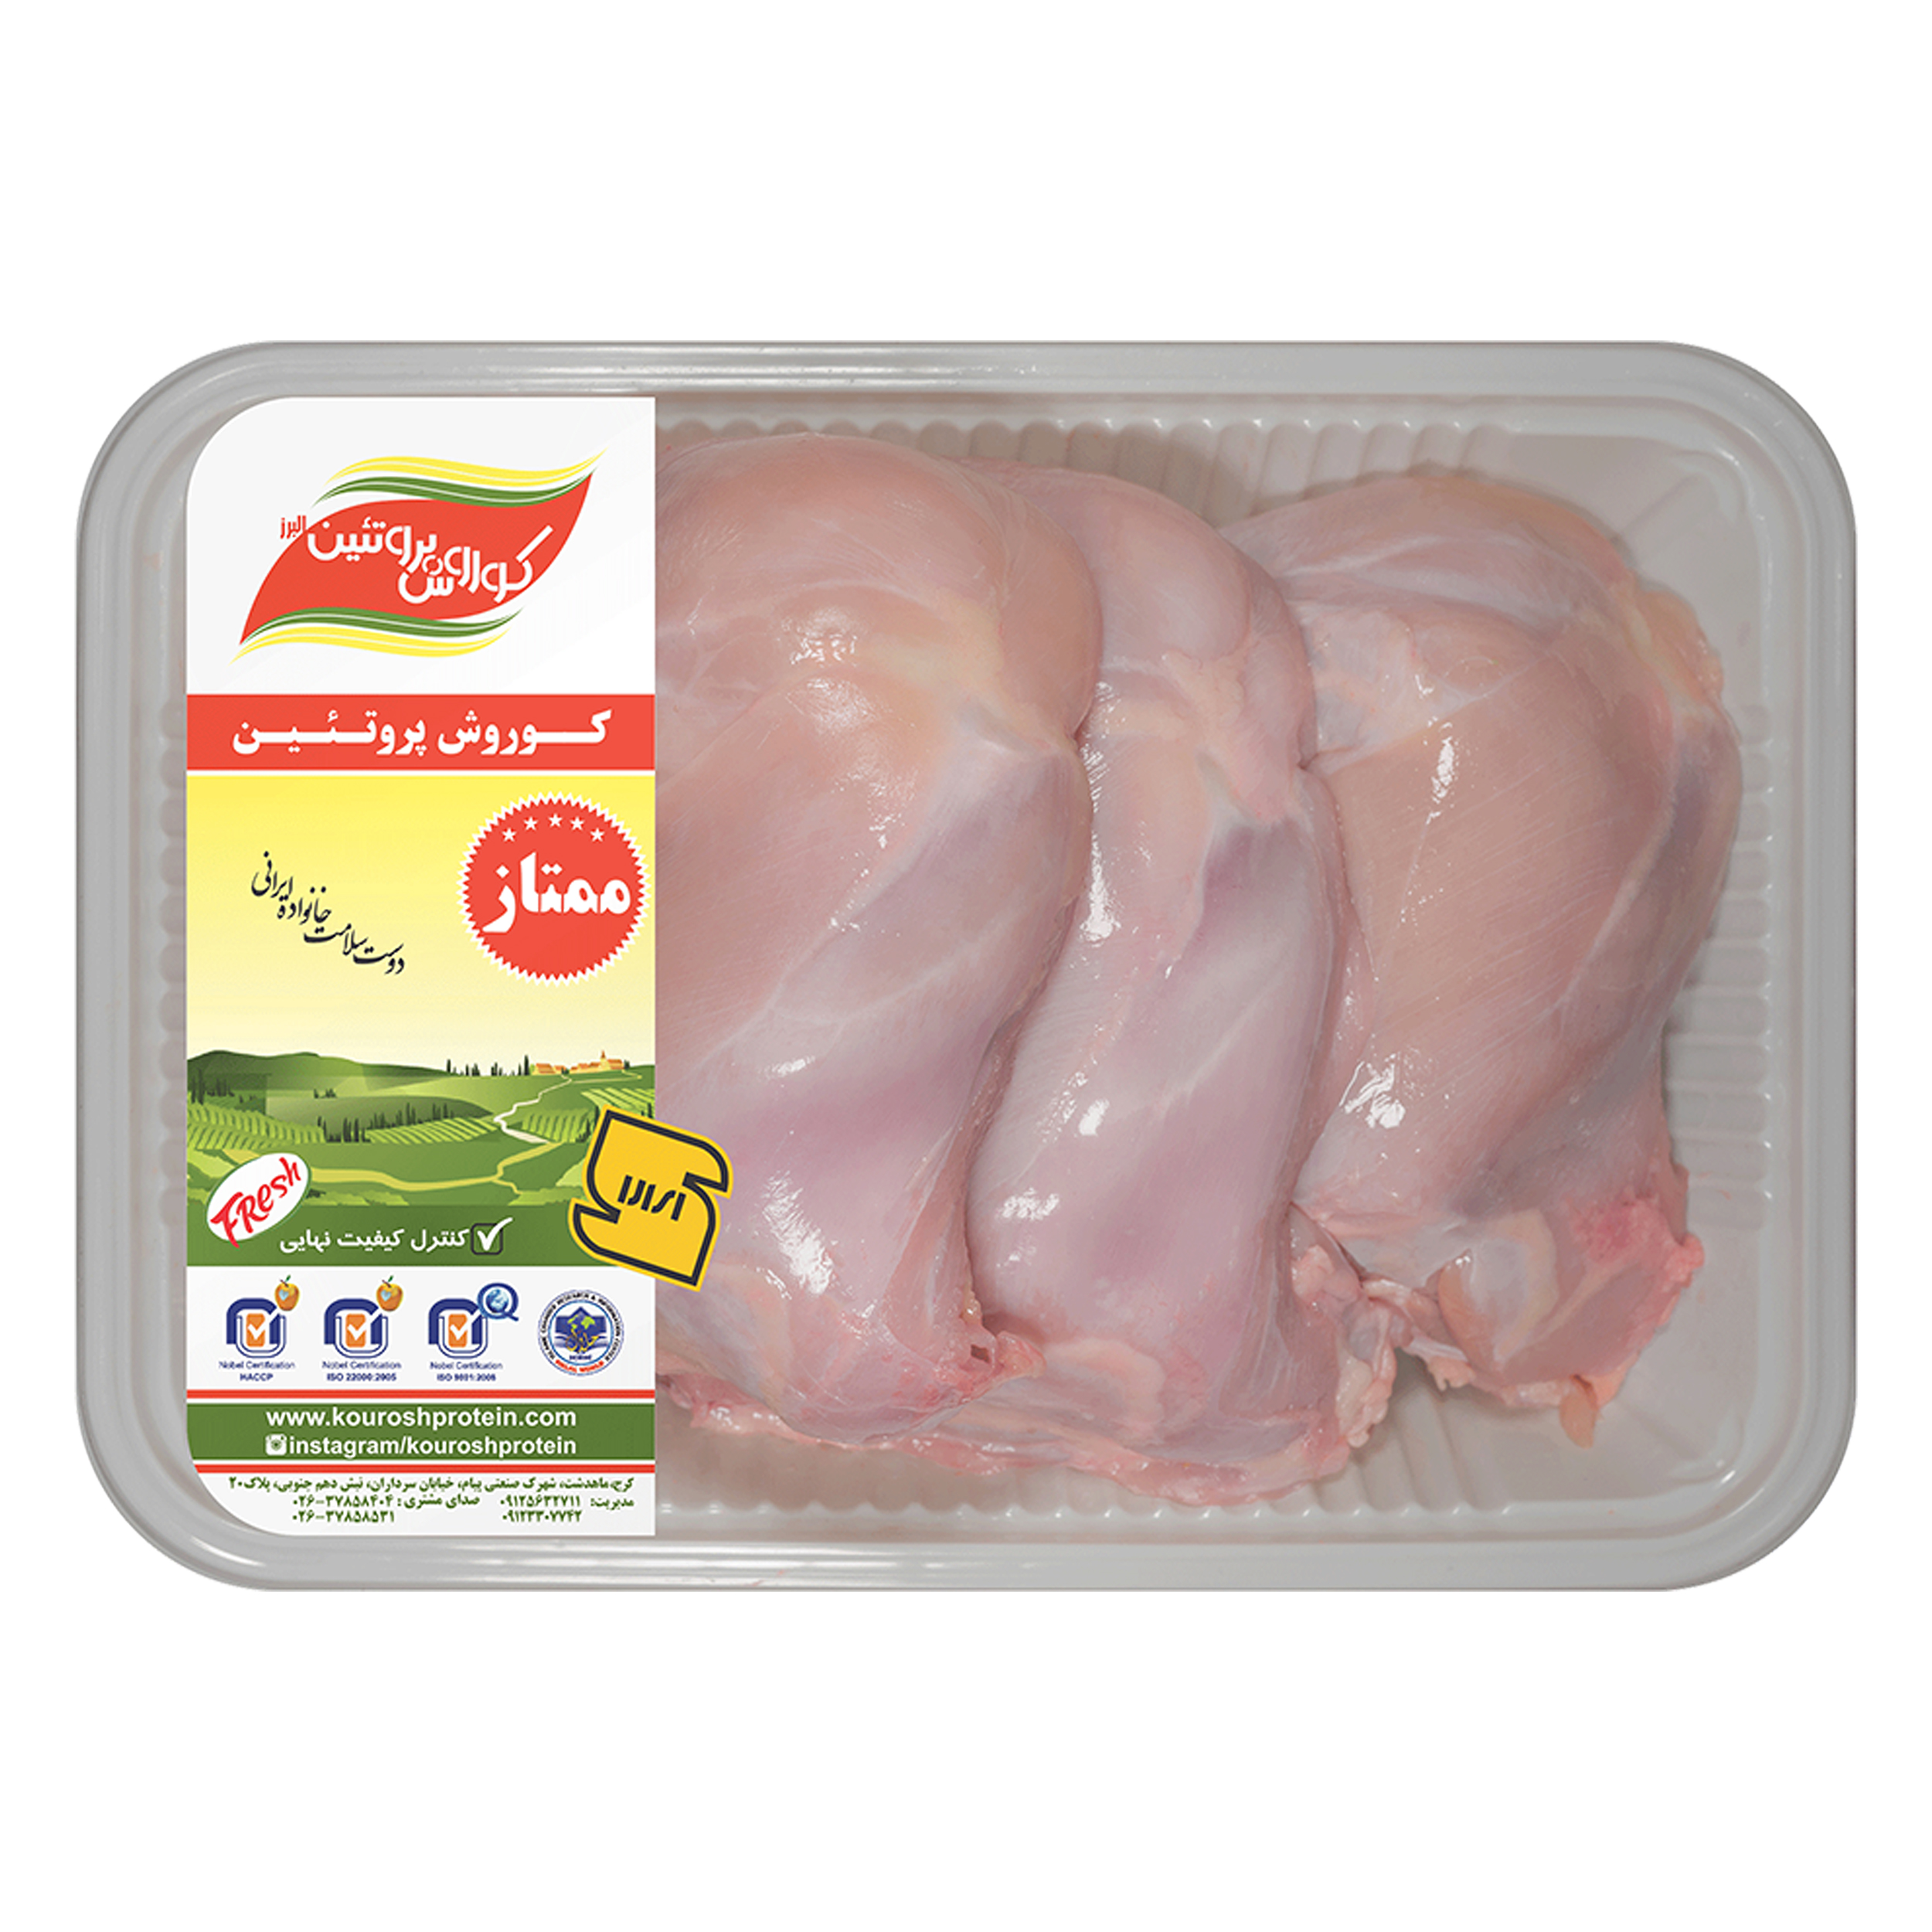 ران مرغ کوروش پروتئین البرز مقدار 1800 گرم